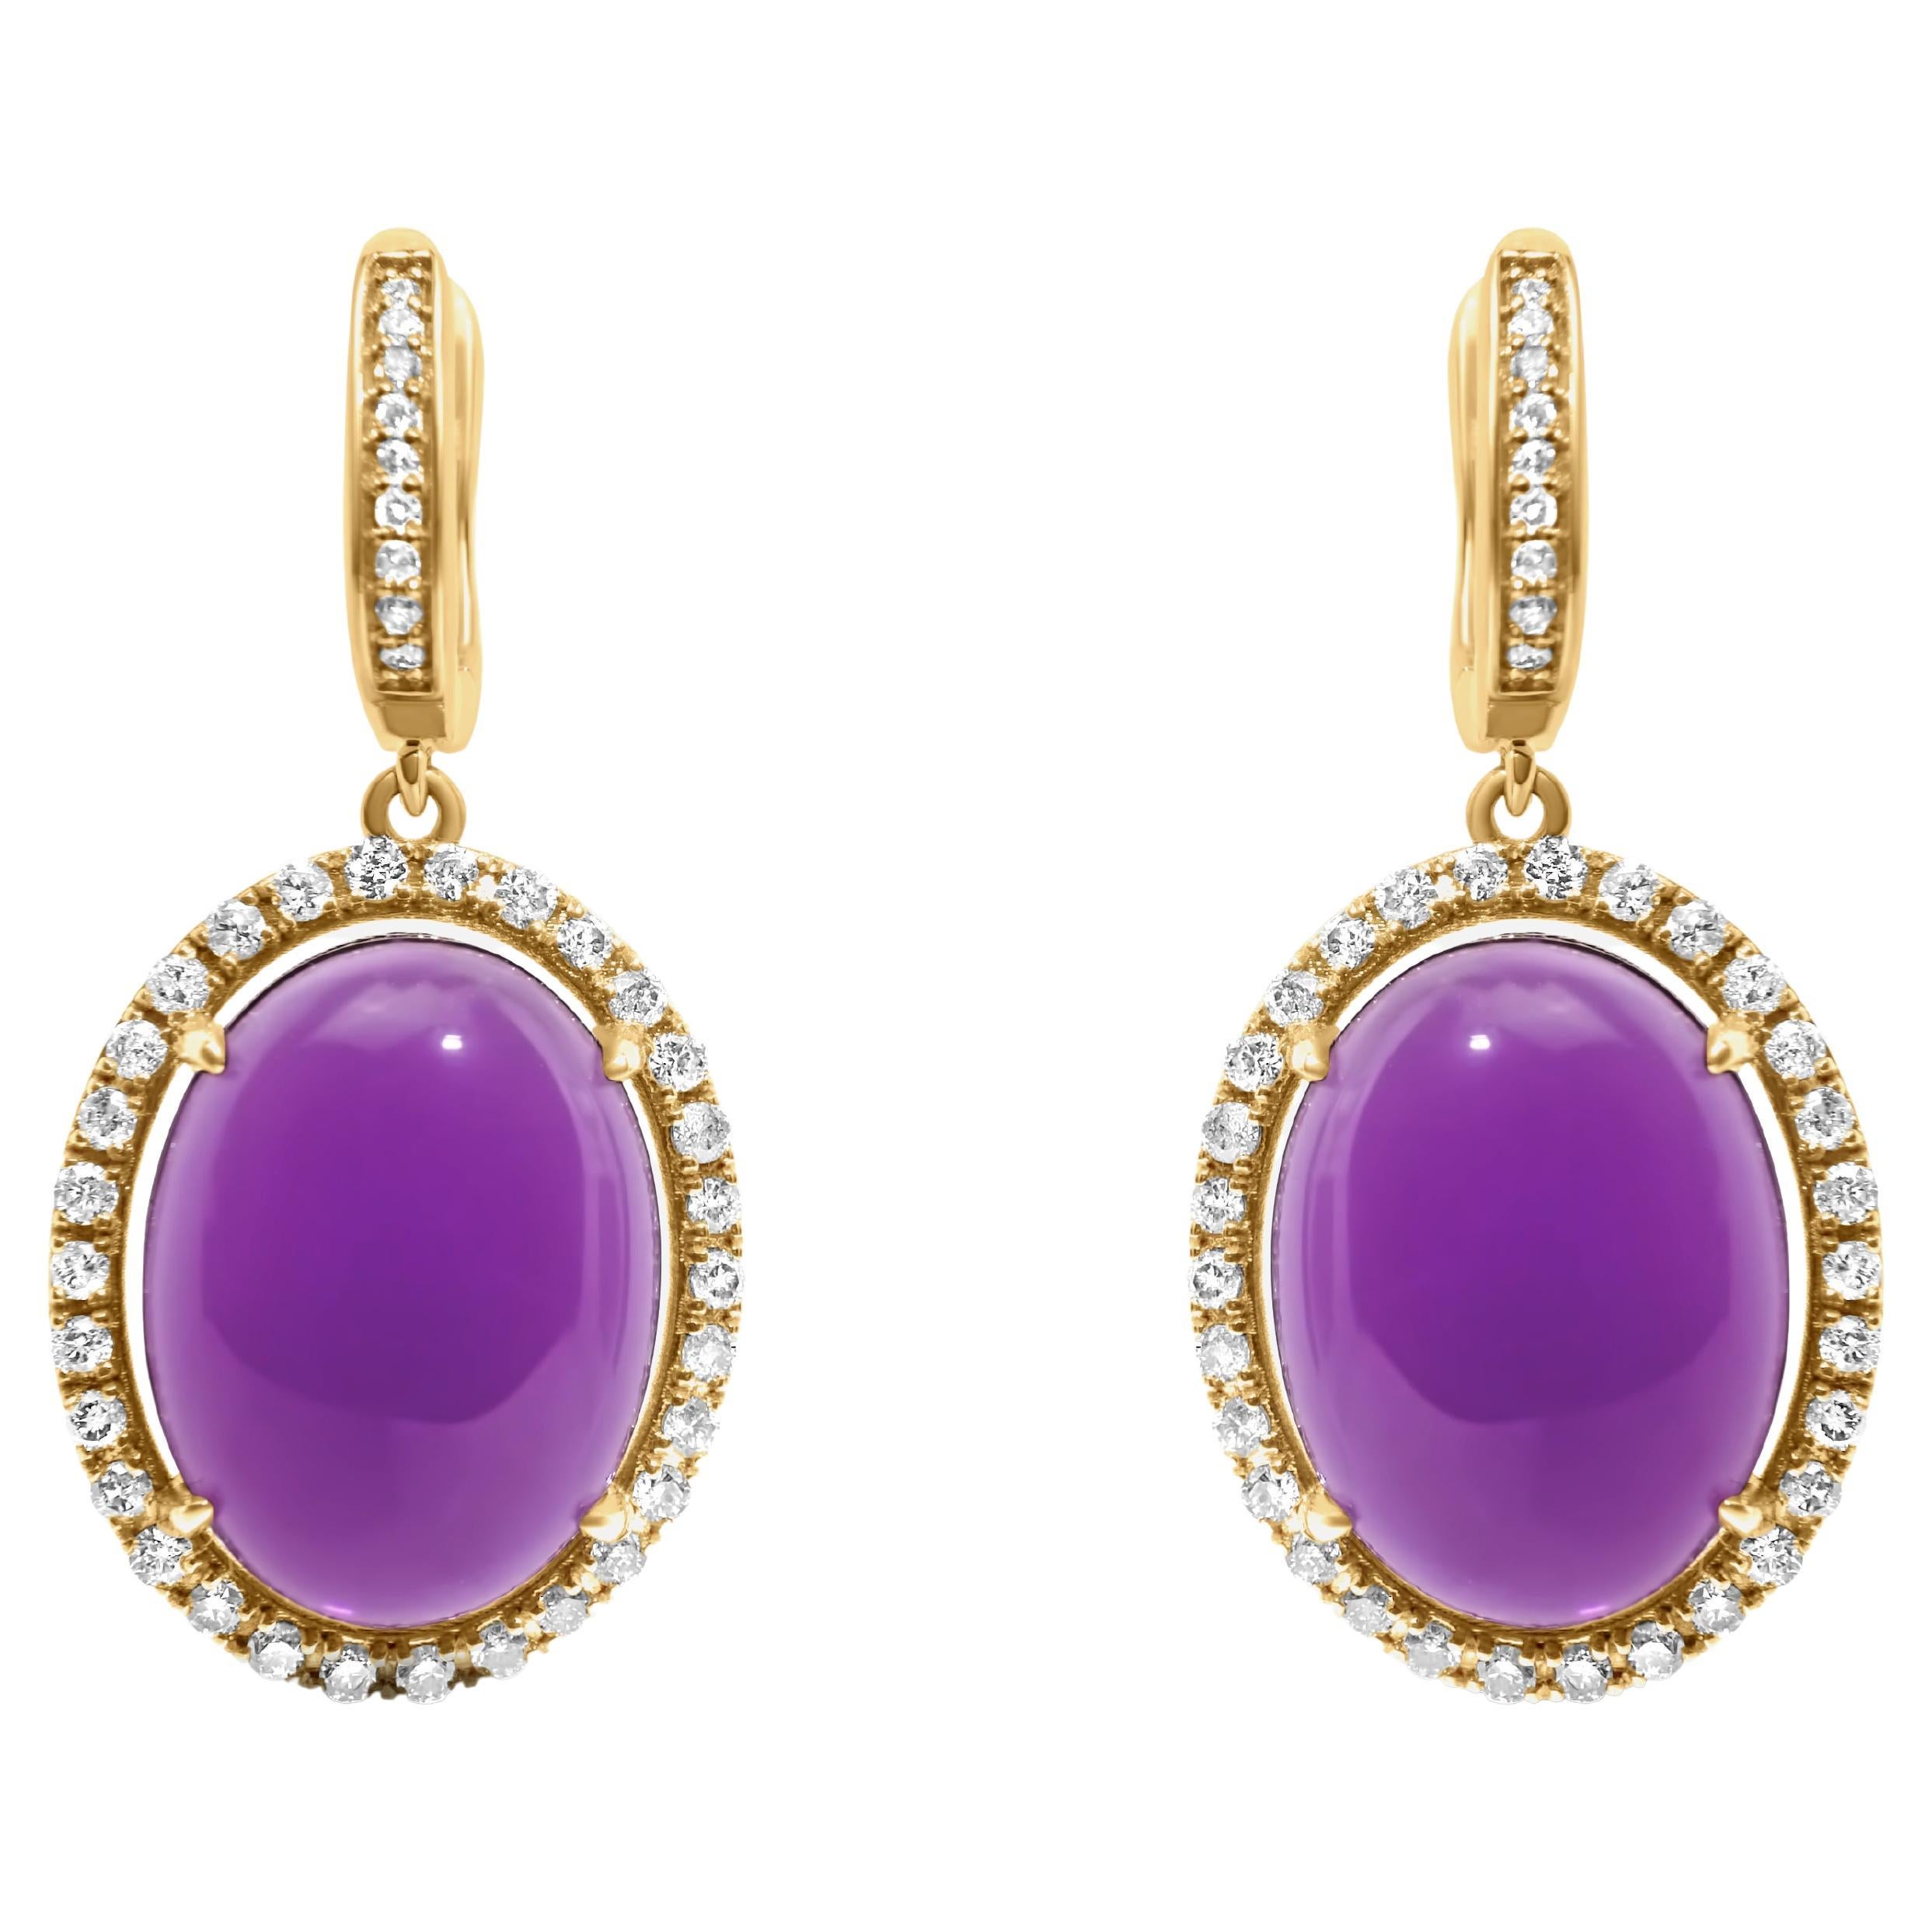 Boucles d'oreilles pendantes Huggie en or jaune 14 carats avec améthyste violette cabochon ovale et halo de diamants